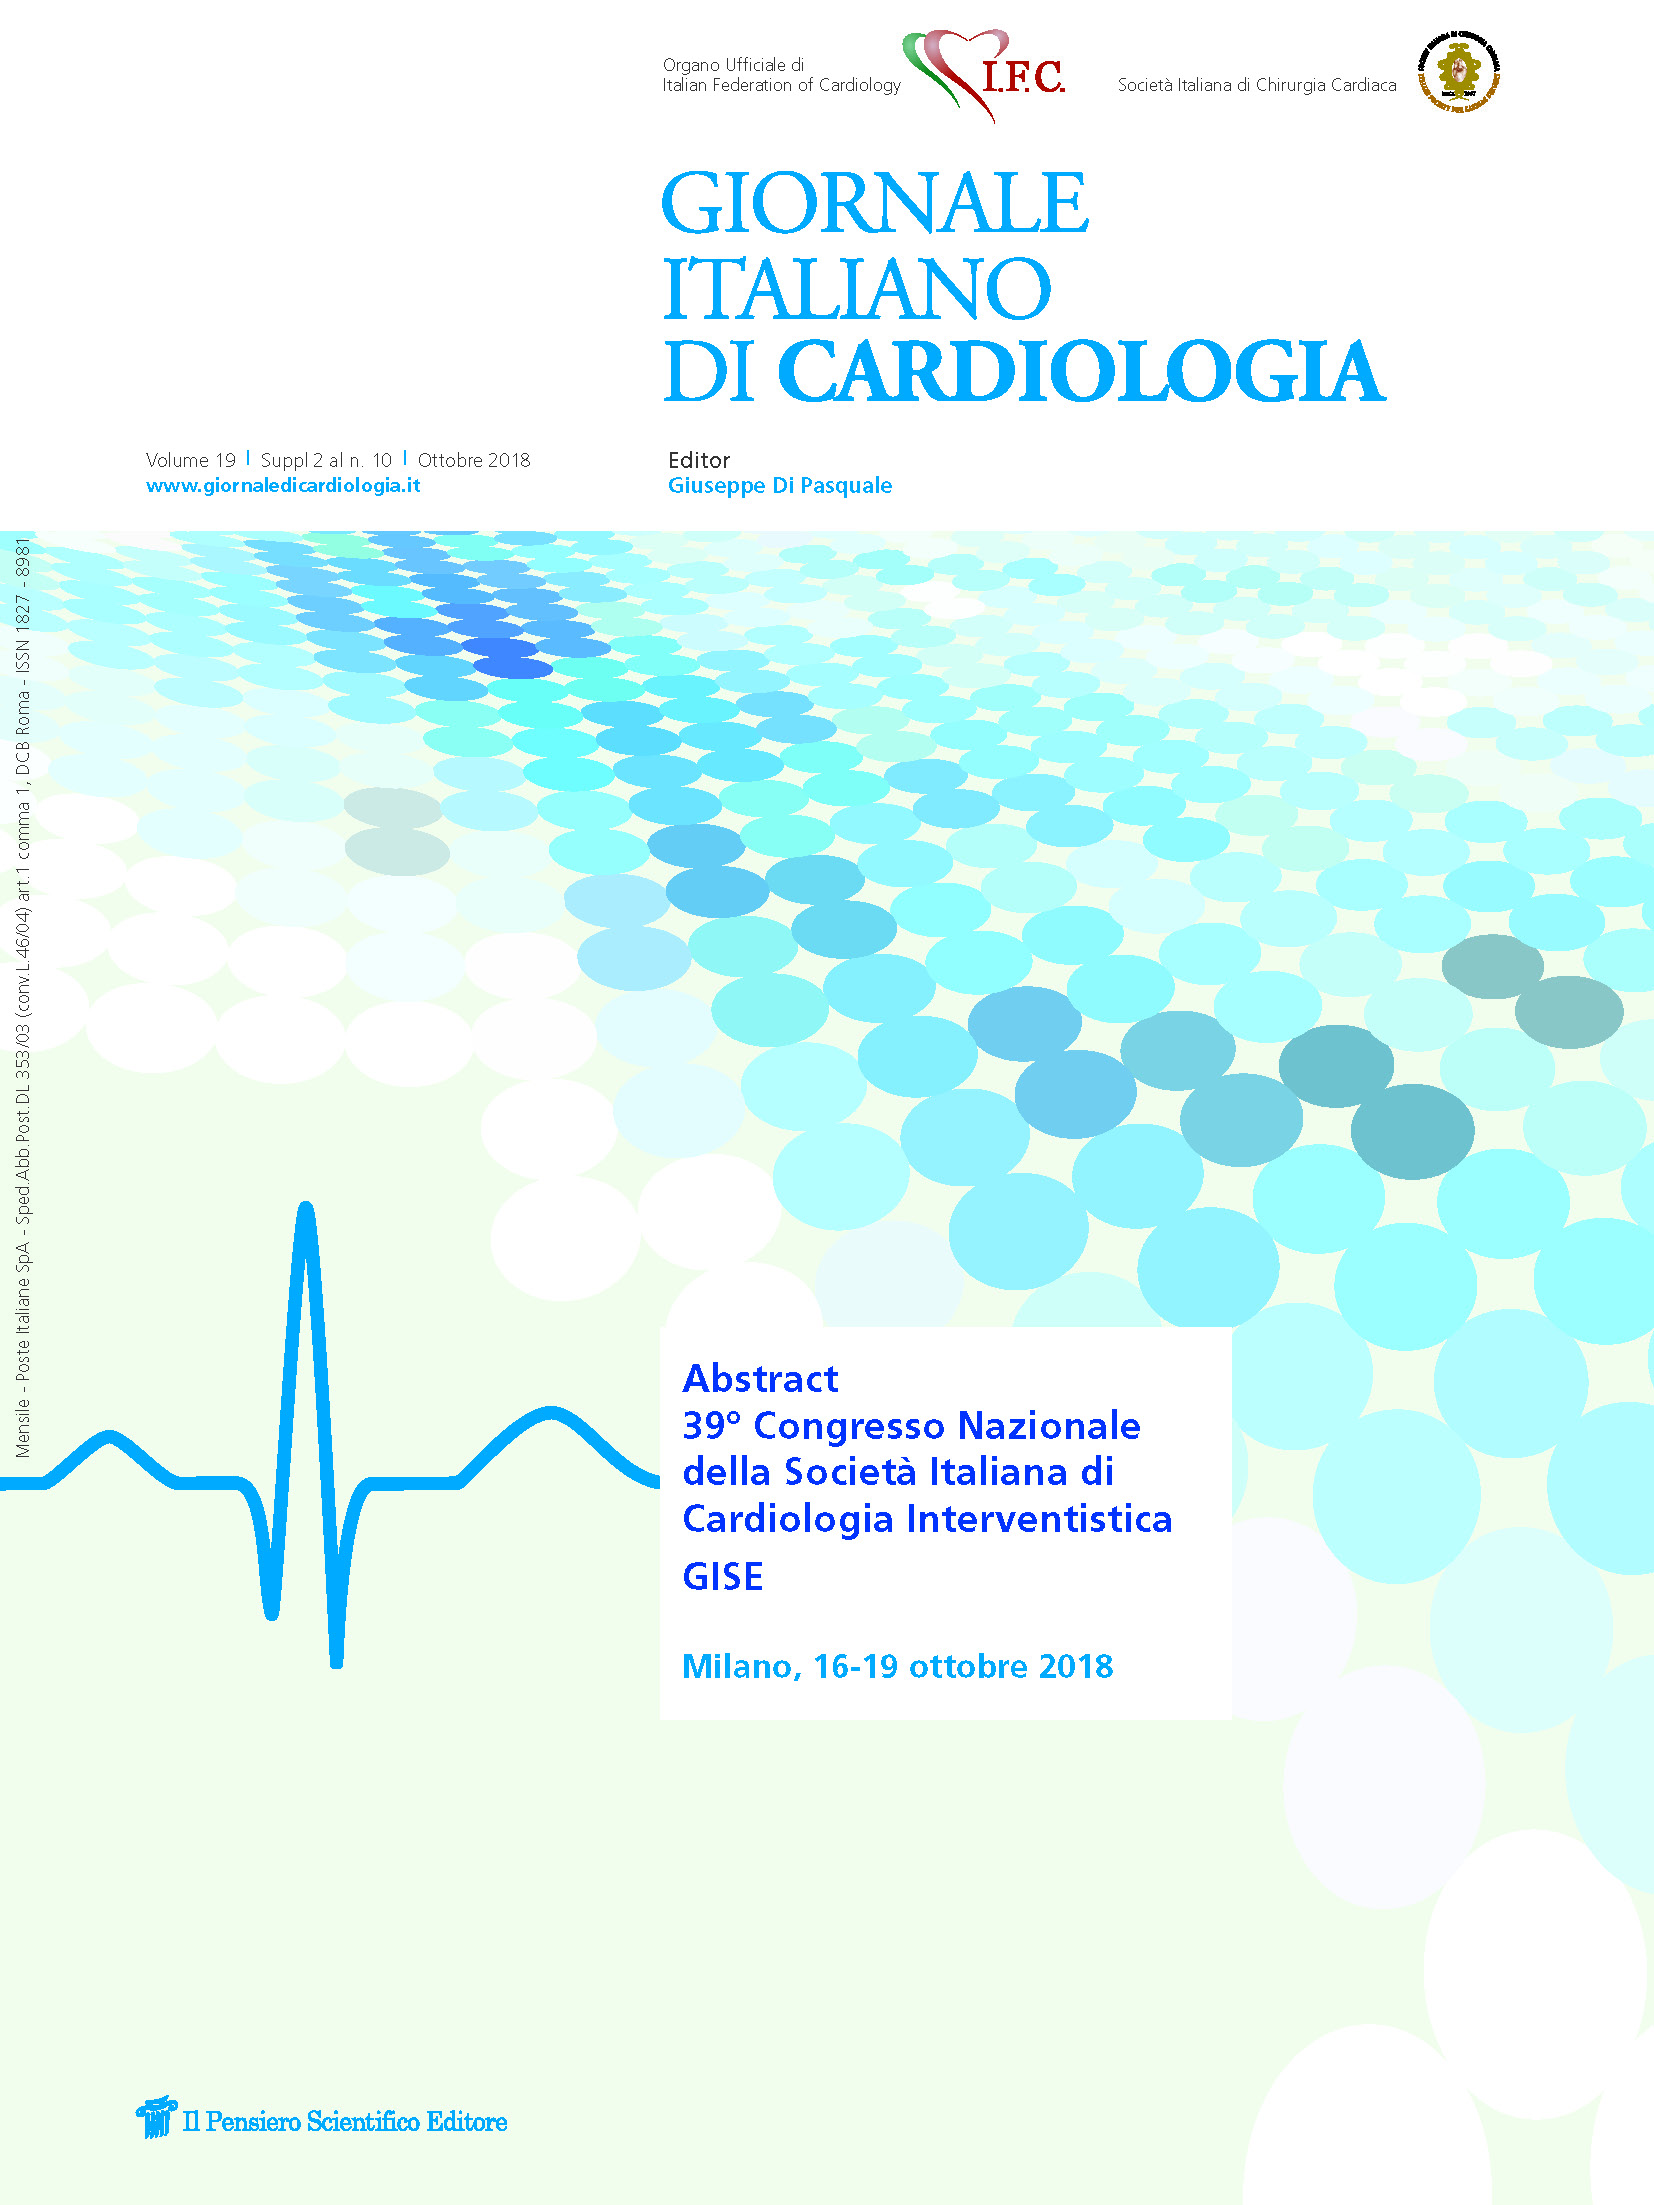 2018 Vol. 19 Suppl. 2 al N. 10 OttobreAbstract 39° Congresso Nazionale della Società Italiana di Cardiologia Interventistica - GISE